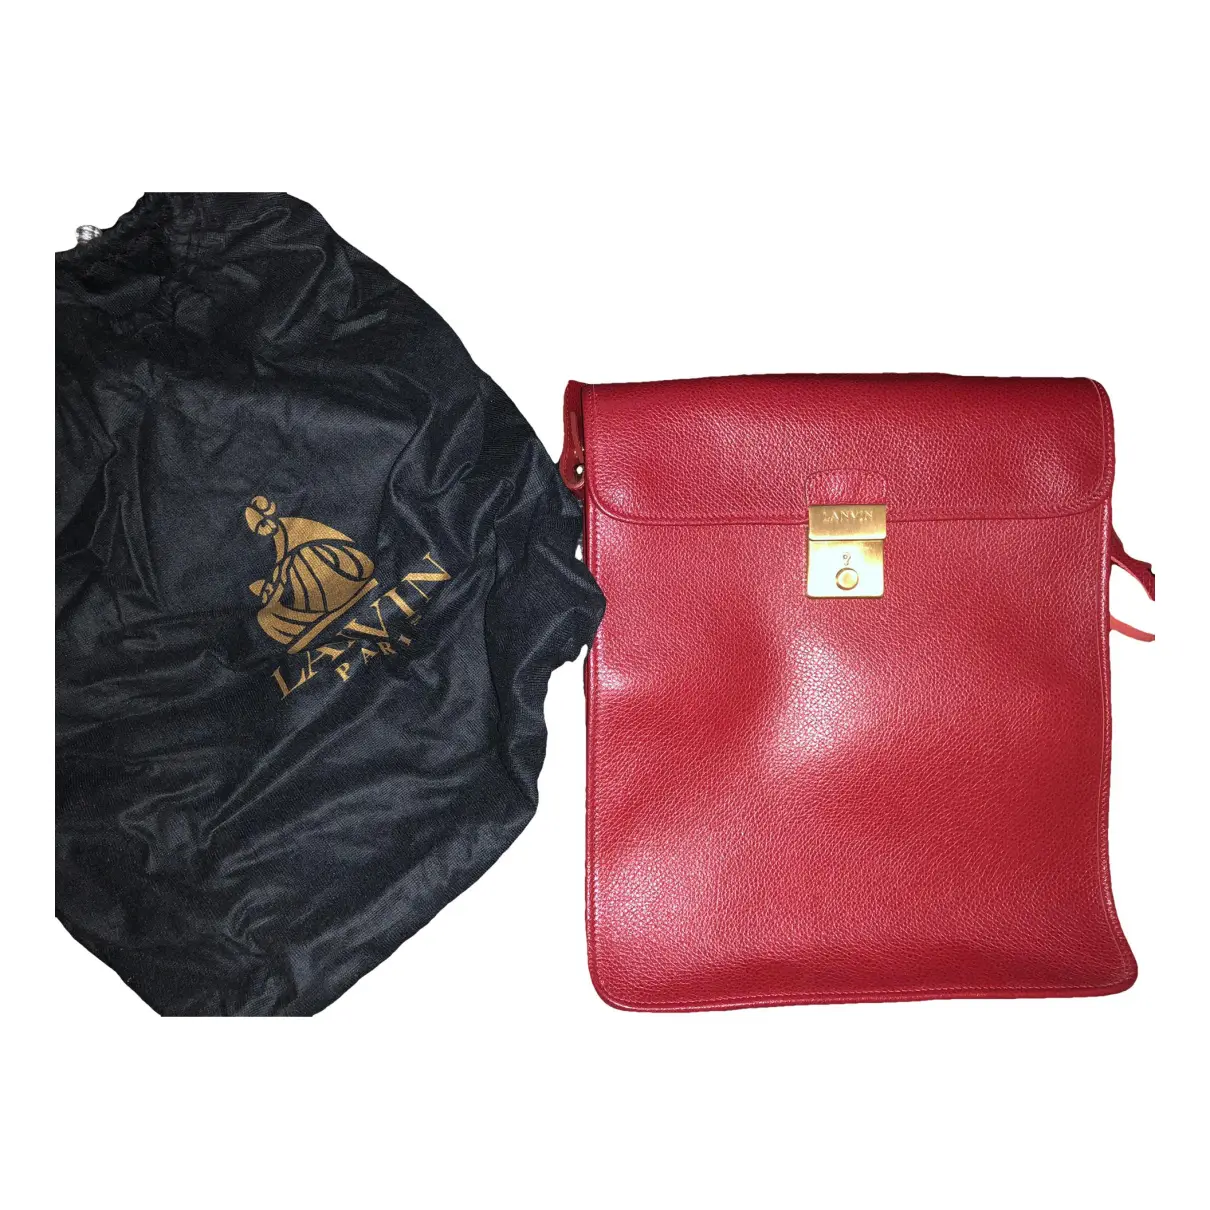 Leather satchel Lanvin